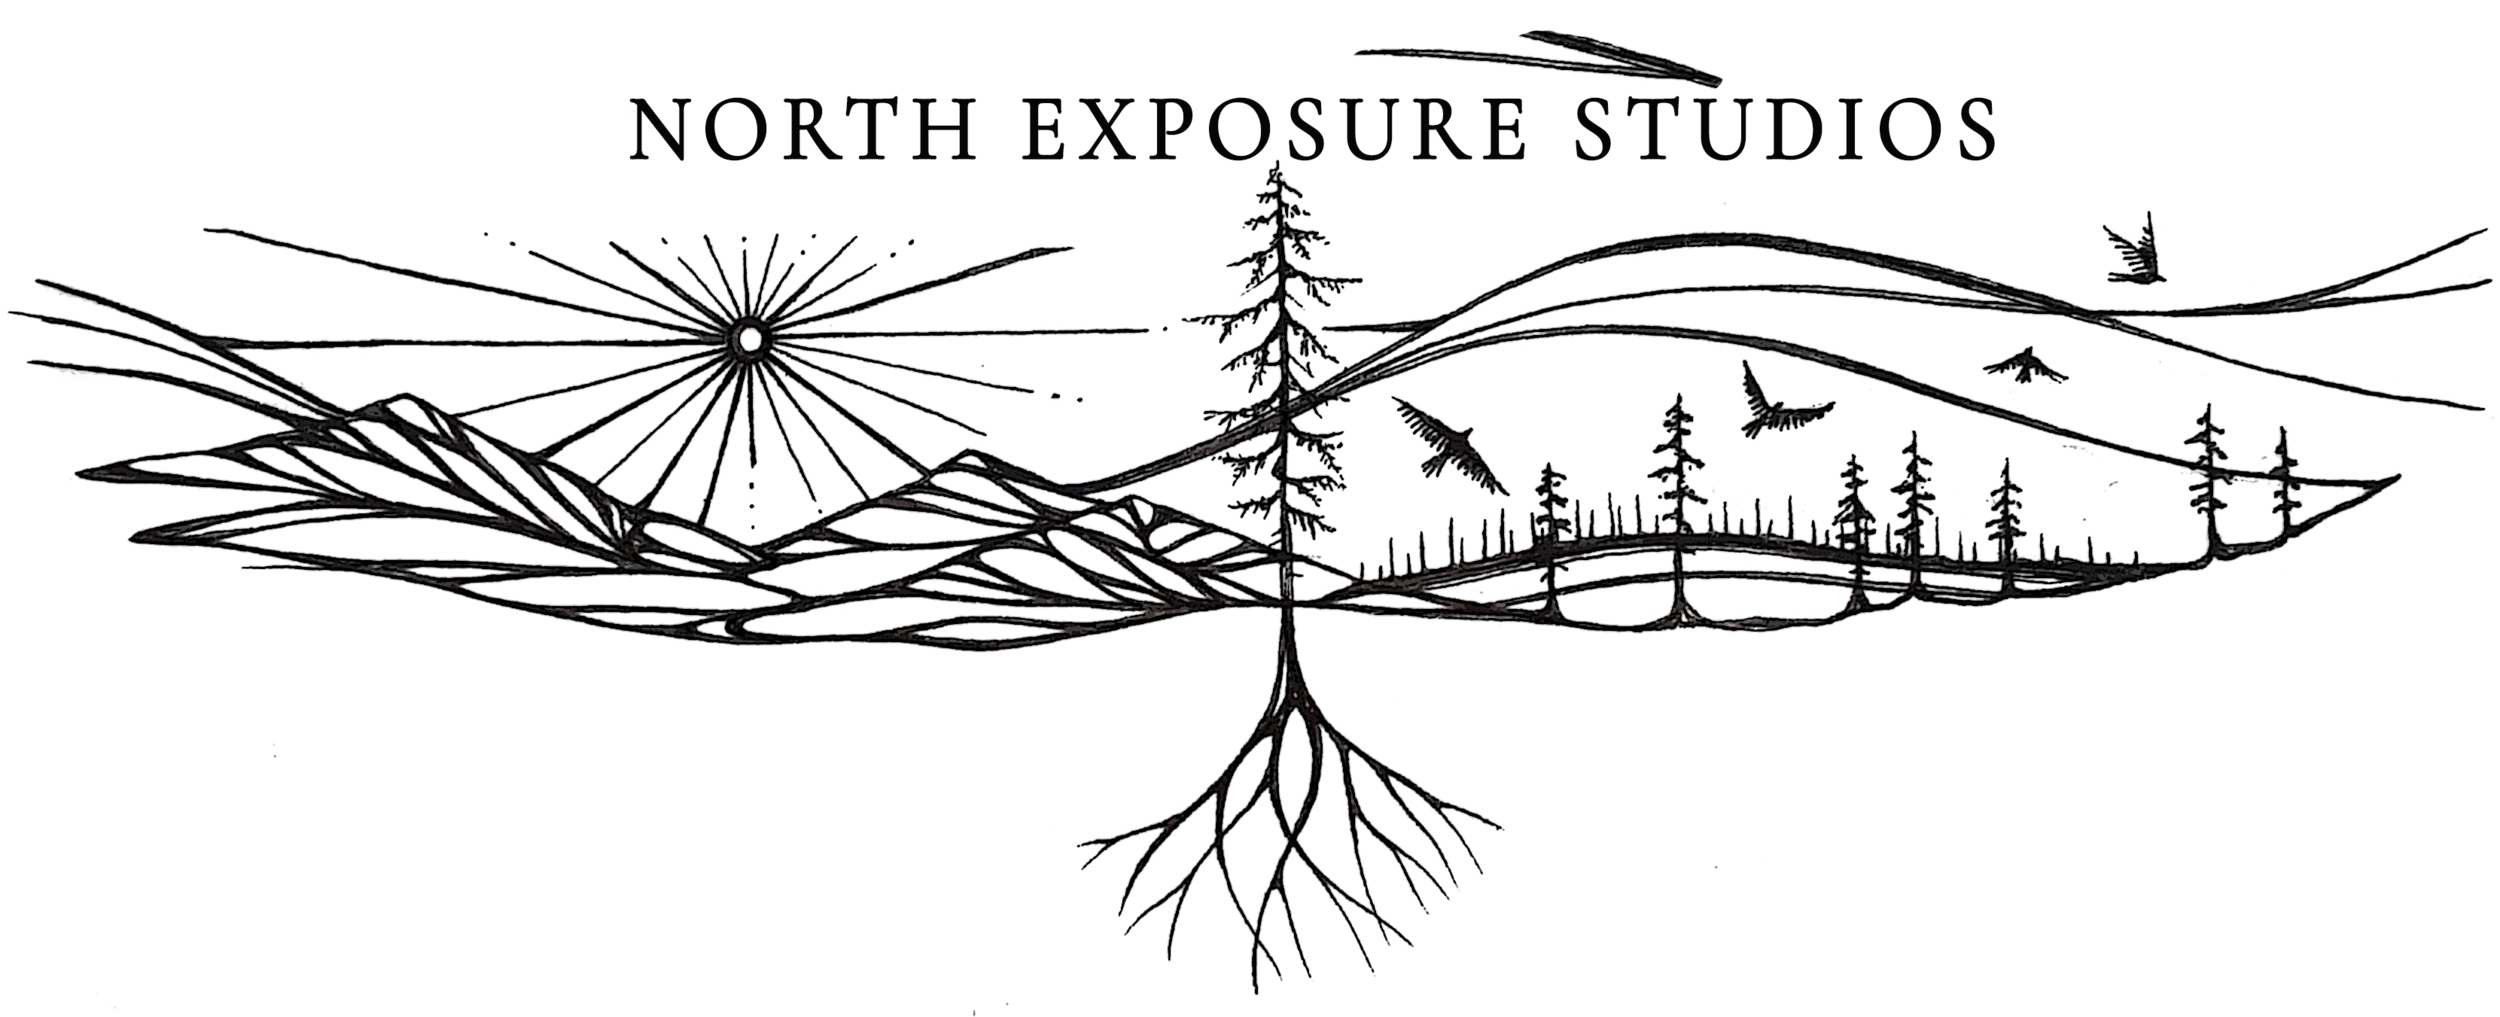 North Exposure Studios